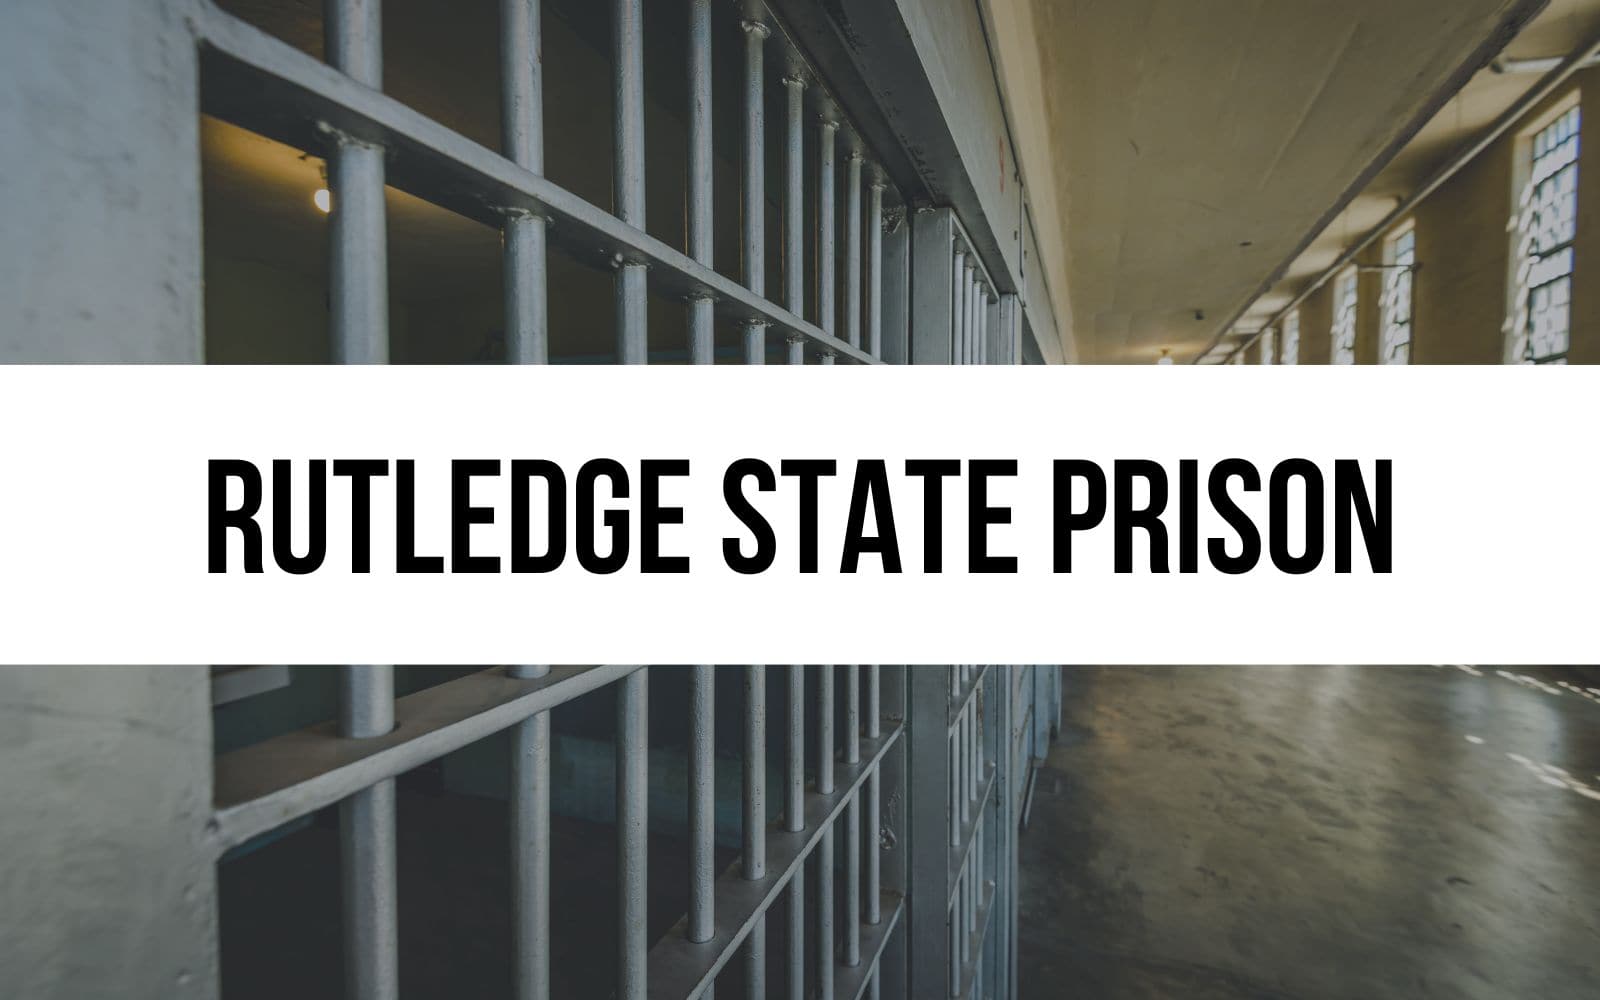 Rutledge State Prison